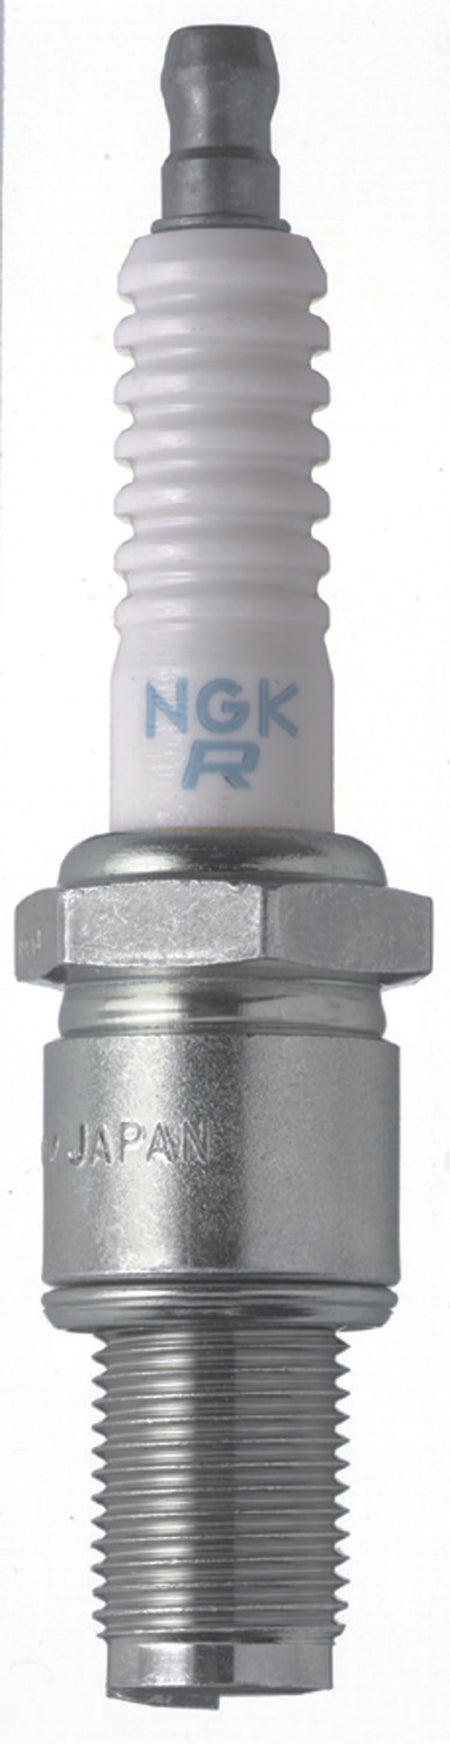 NGK Racing Spark Plug Box of 4 (R6725-115)